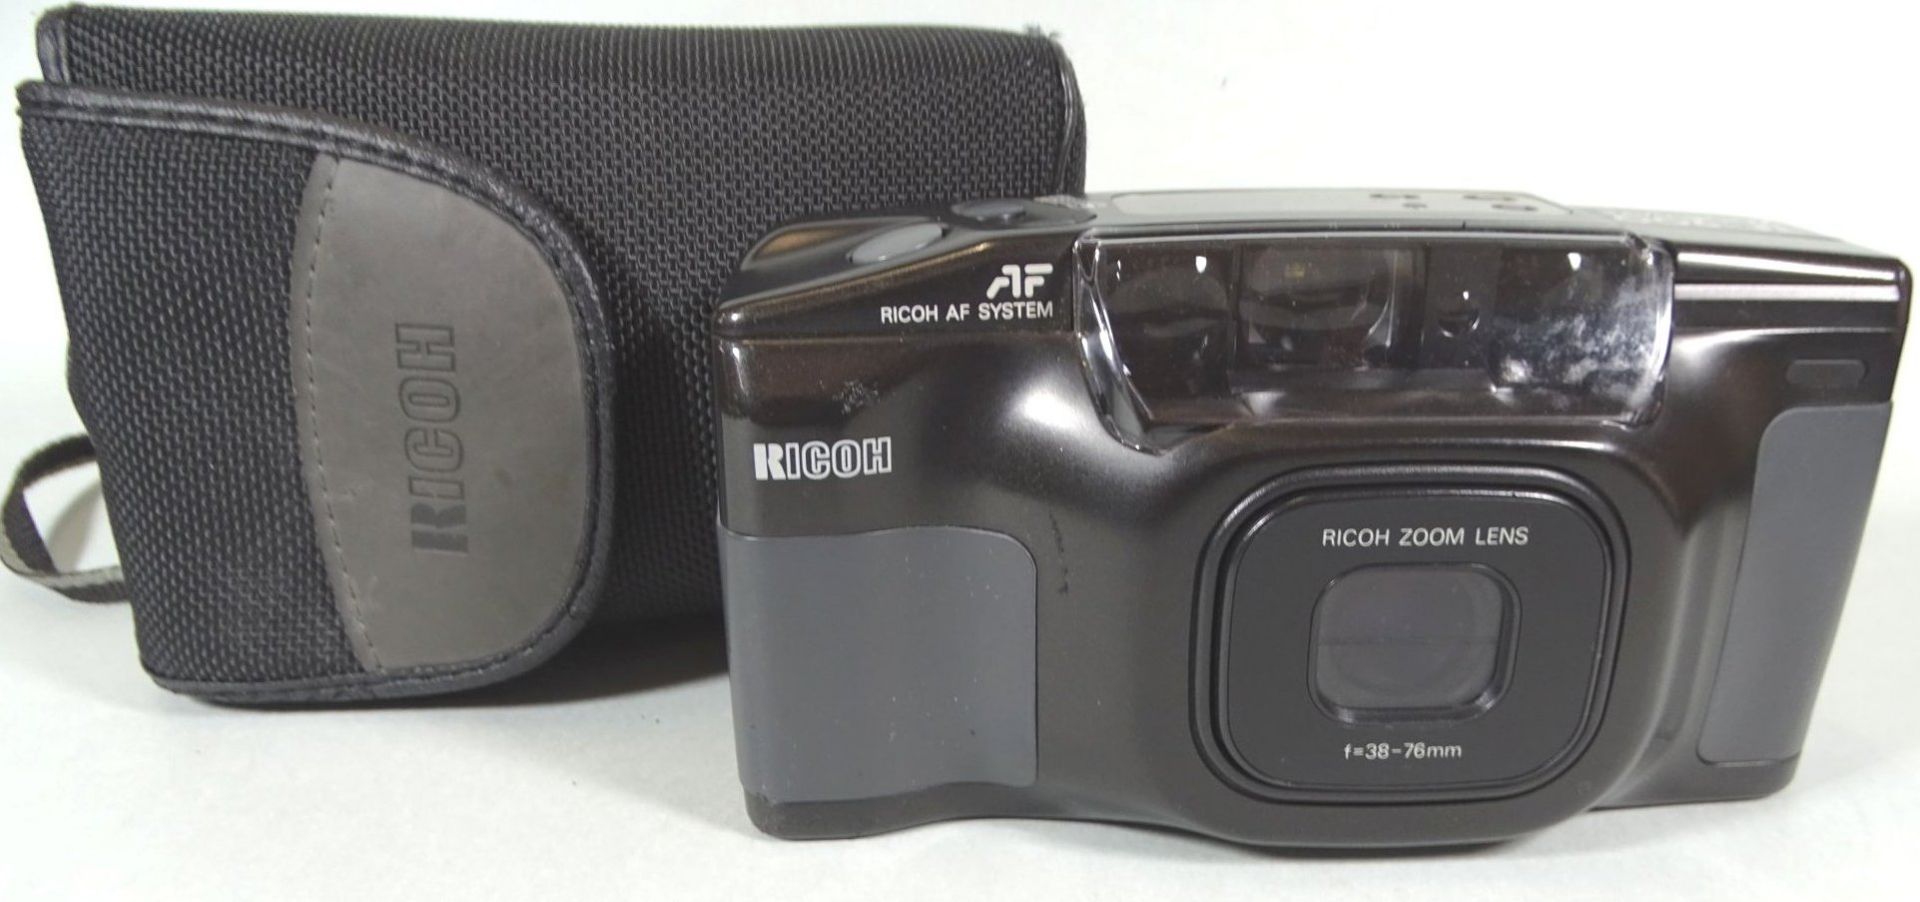 Fotoapparat Rico AF TF-900 in Tasche, gut erhalten- - -22.61 % buyer's premium on the hammer